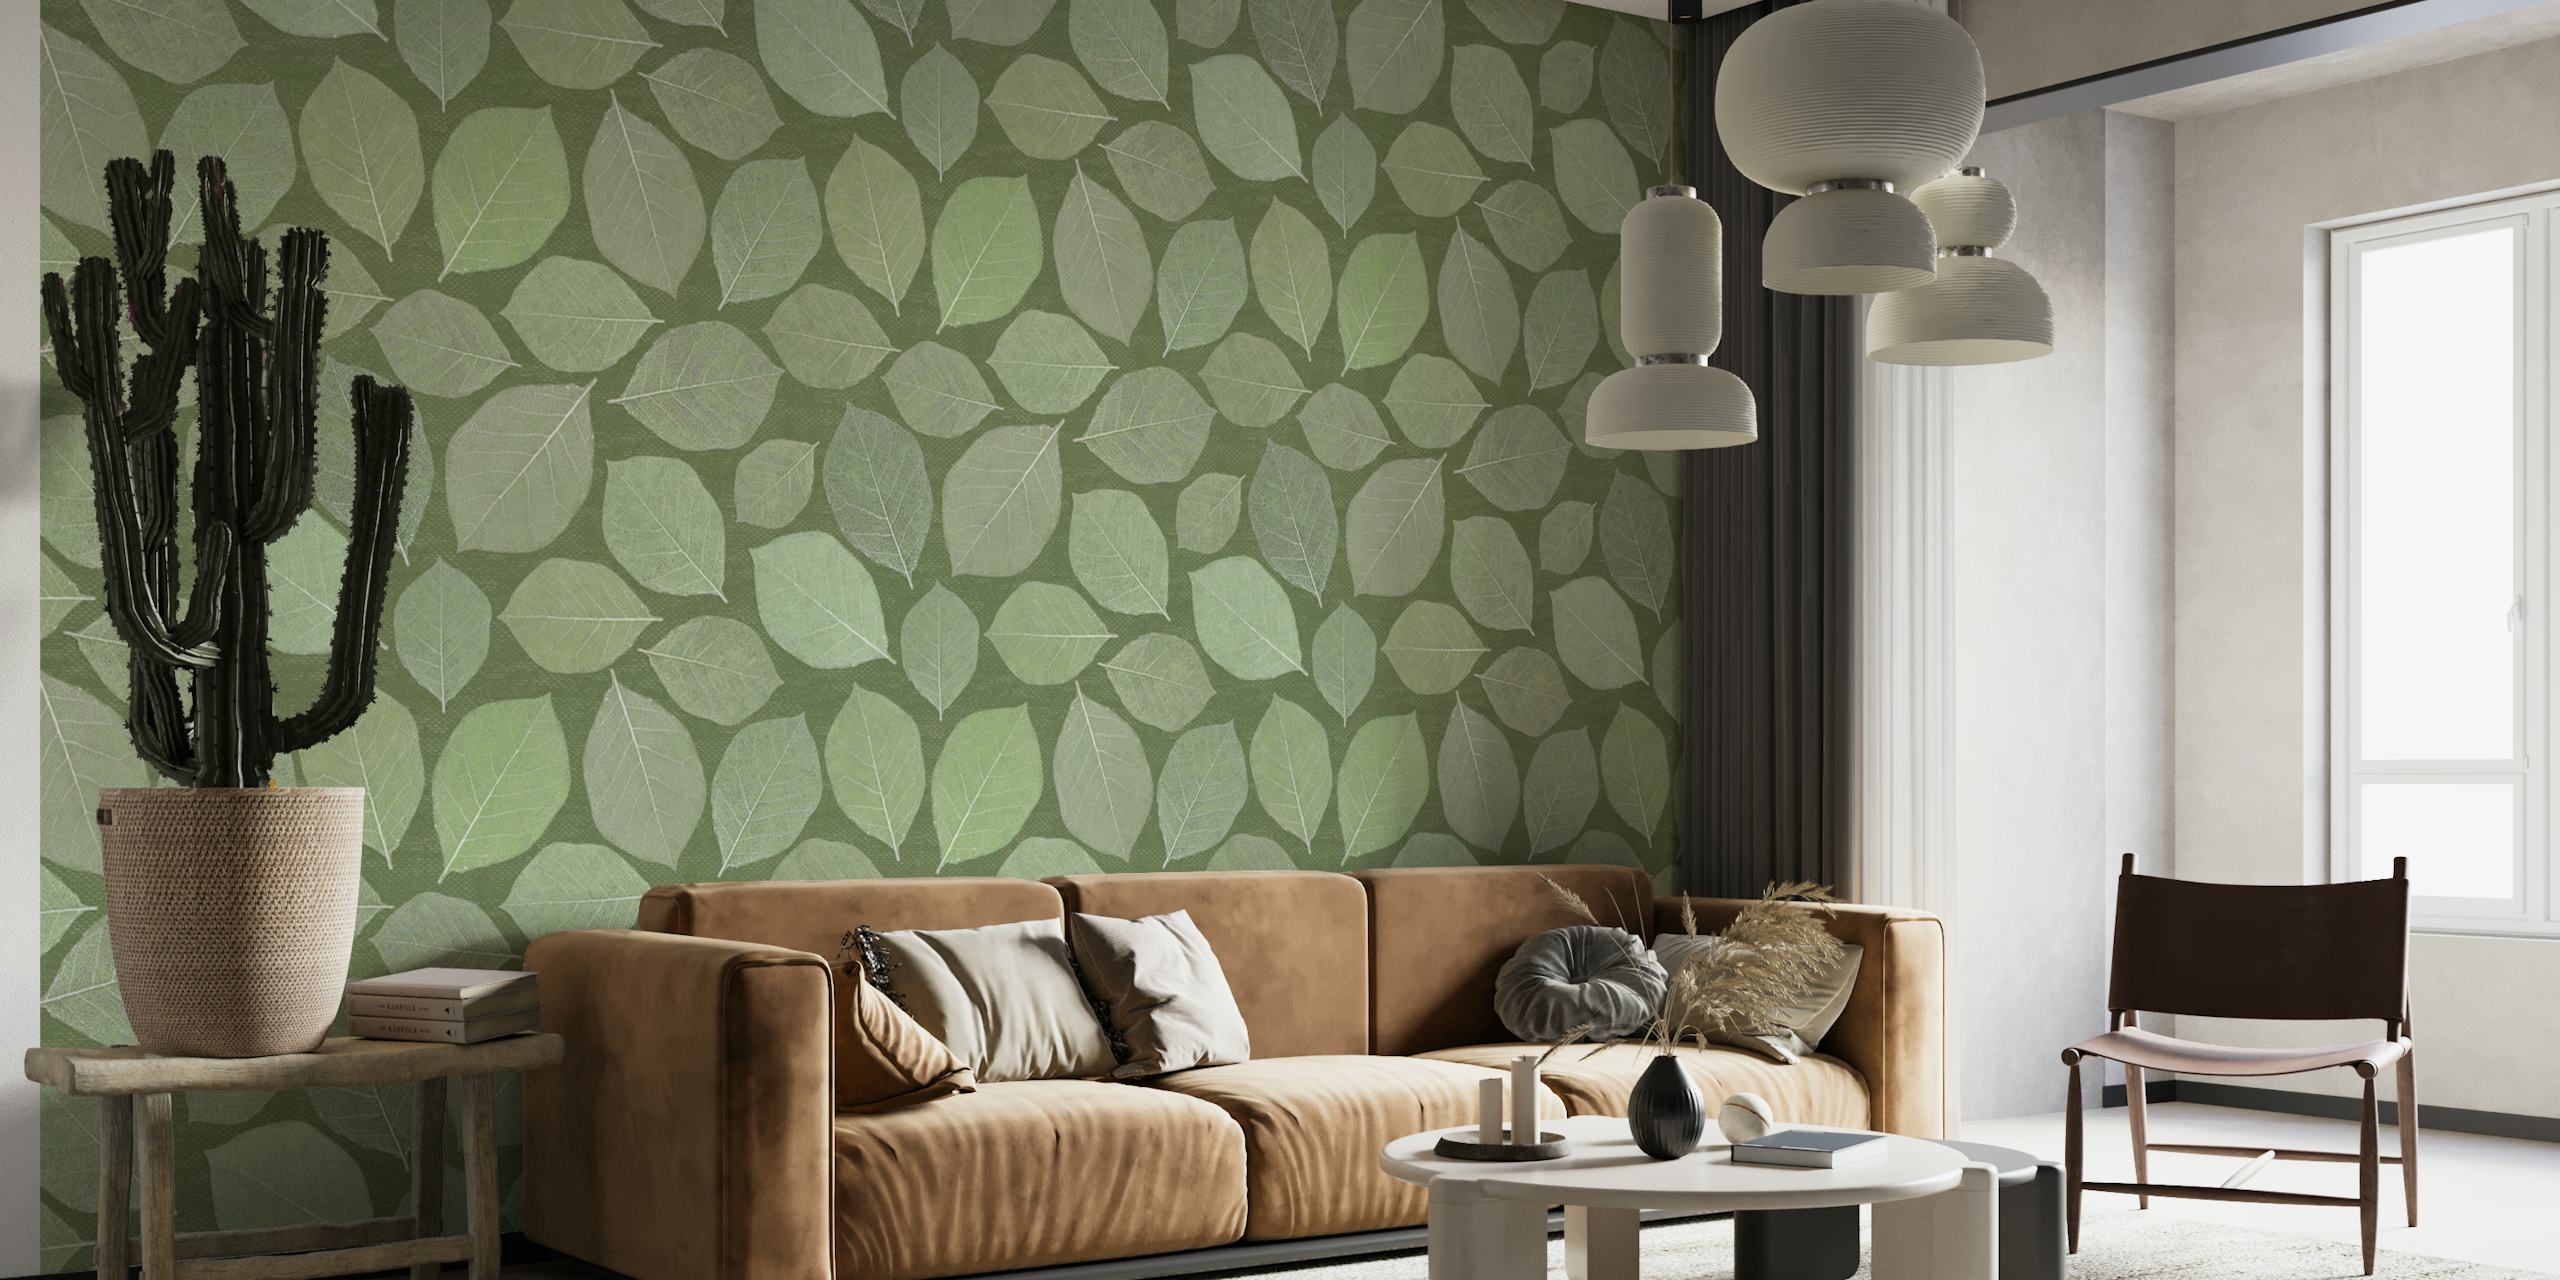 Fotomural de folhas de magnólia em diferentes tons de verde, perfeito para uma decoração interior tranquila